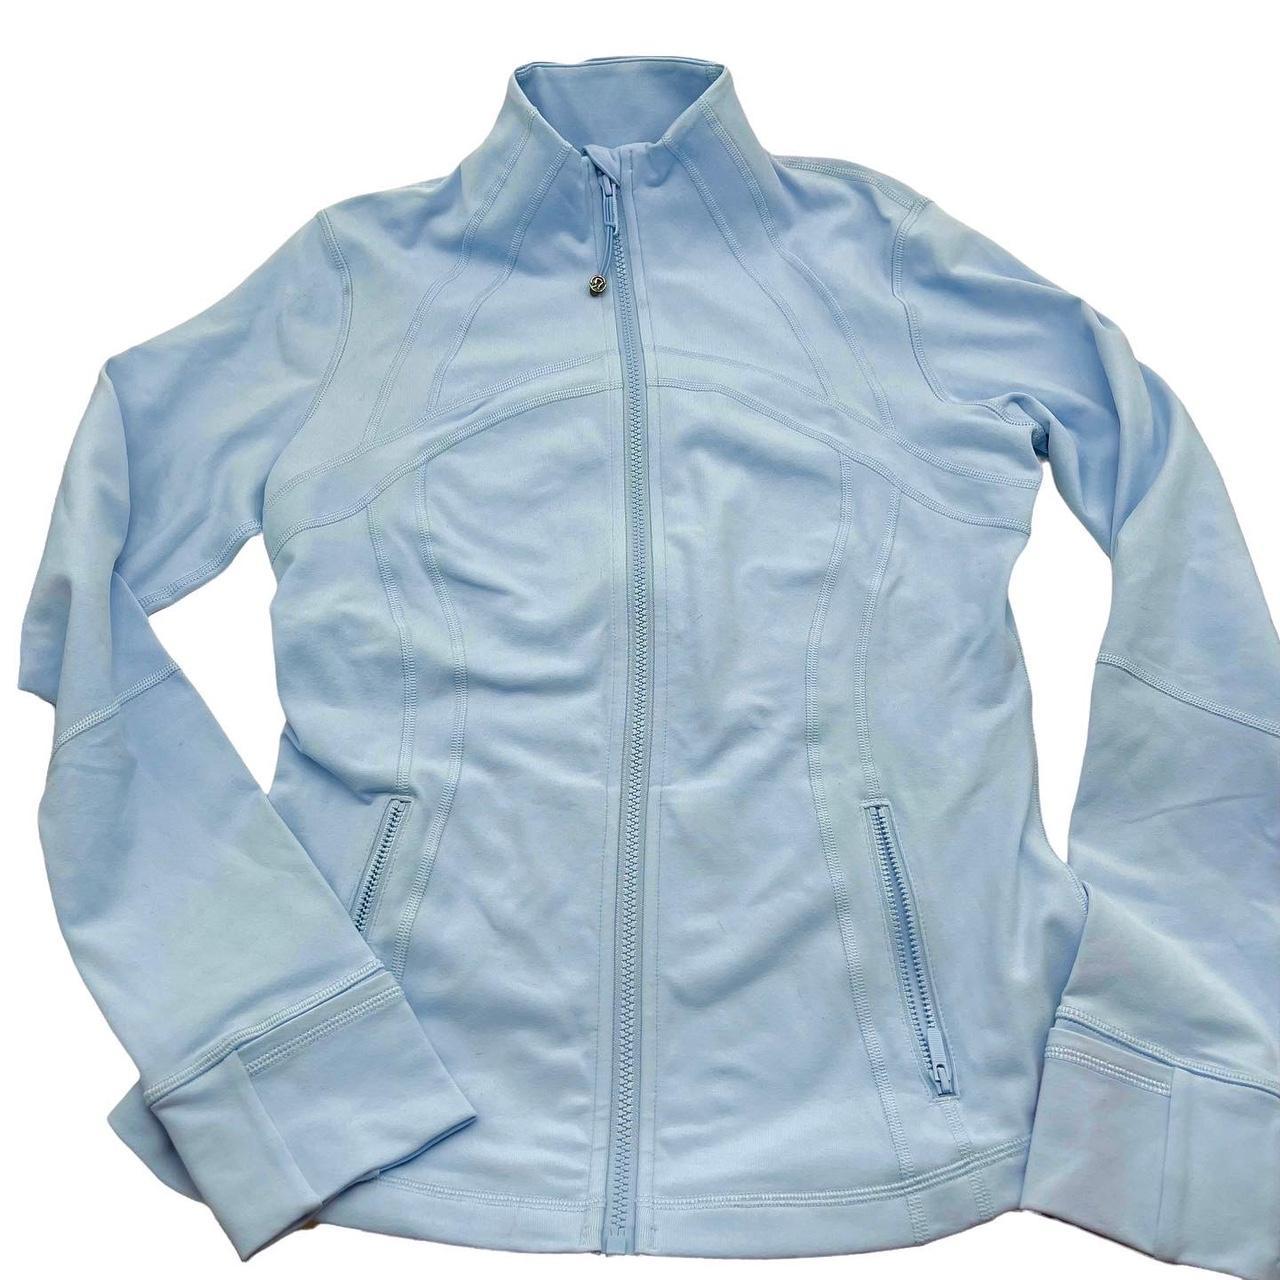 Lululemon Define Jacket Blue Linen Size 10 Super... - Depop